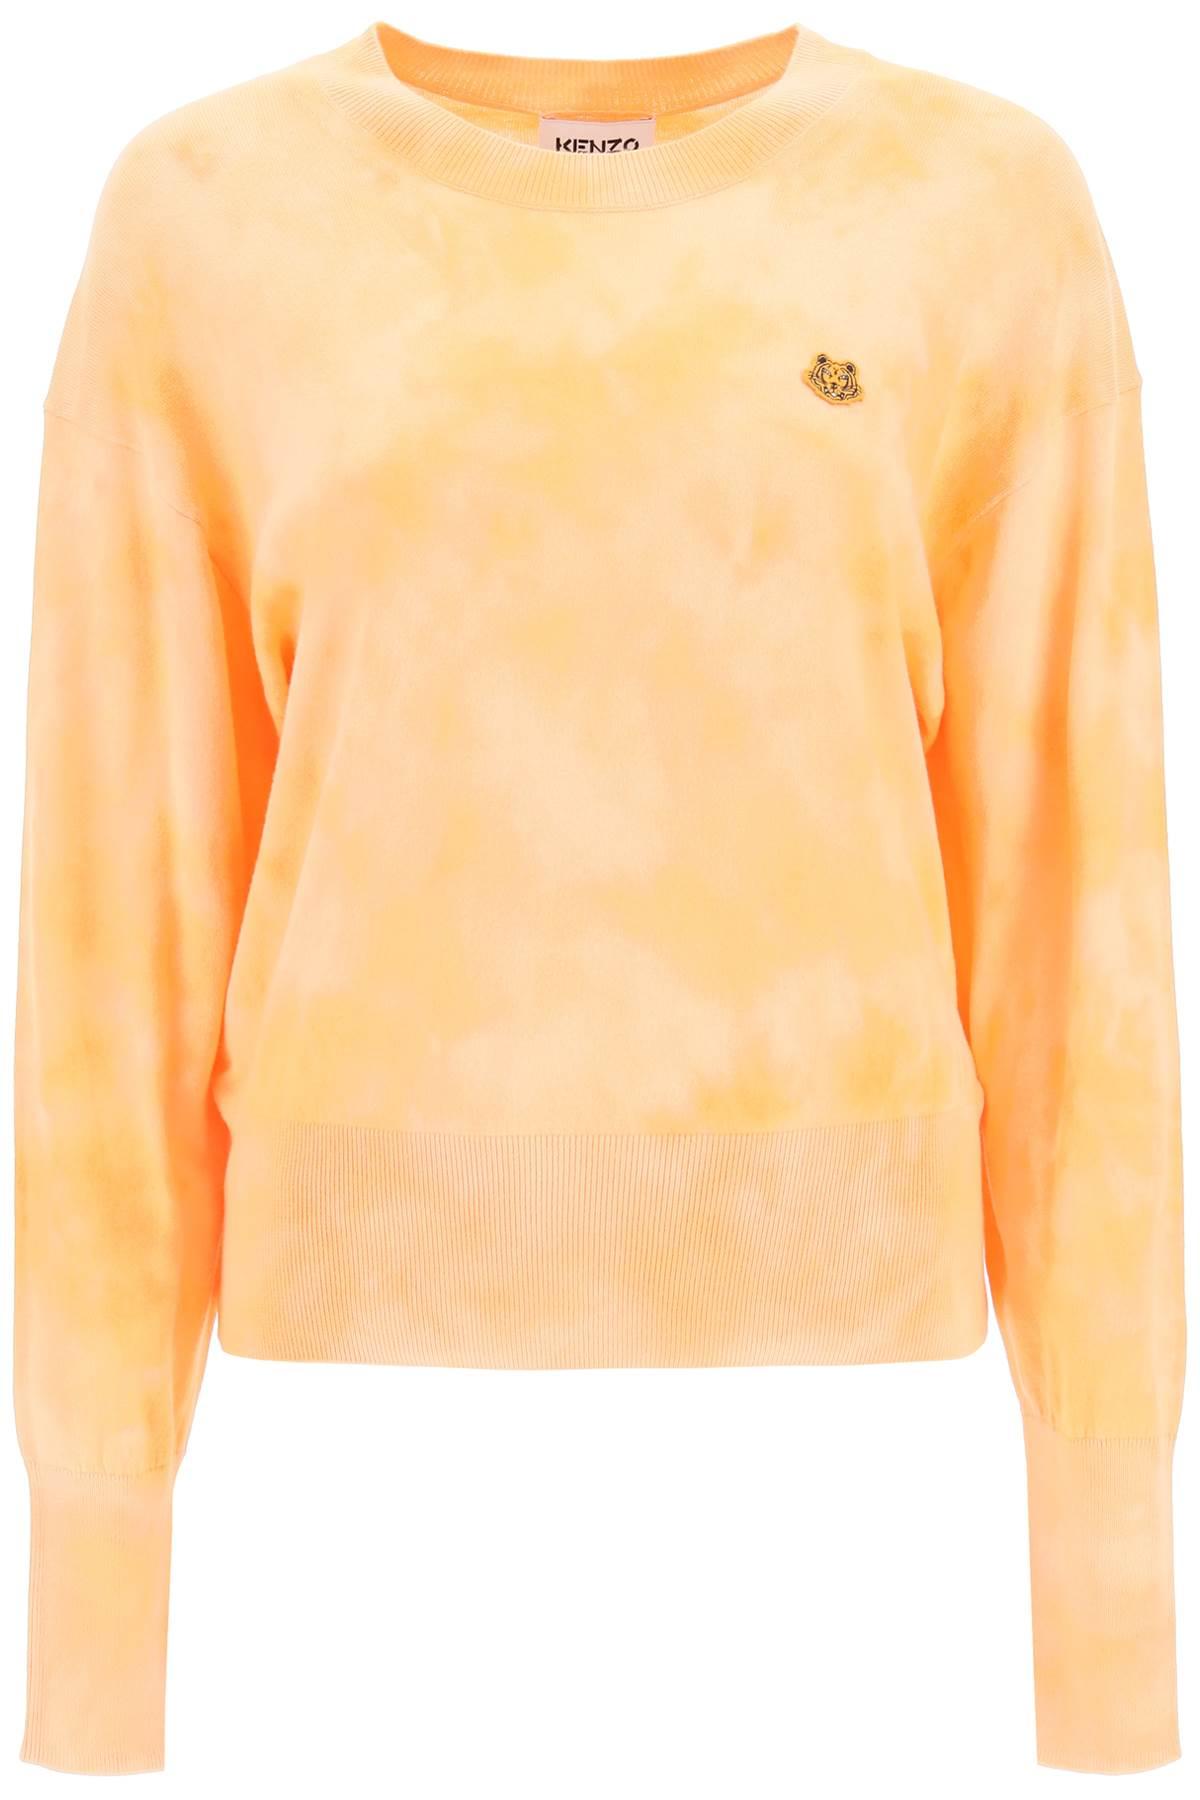 KENZO Cotton Tiger Crest Sweater in Orange - Save 18% | Lyst